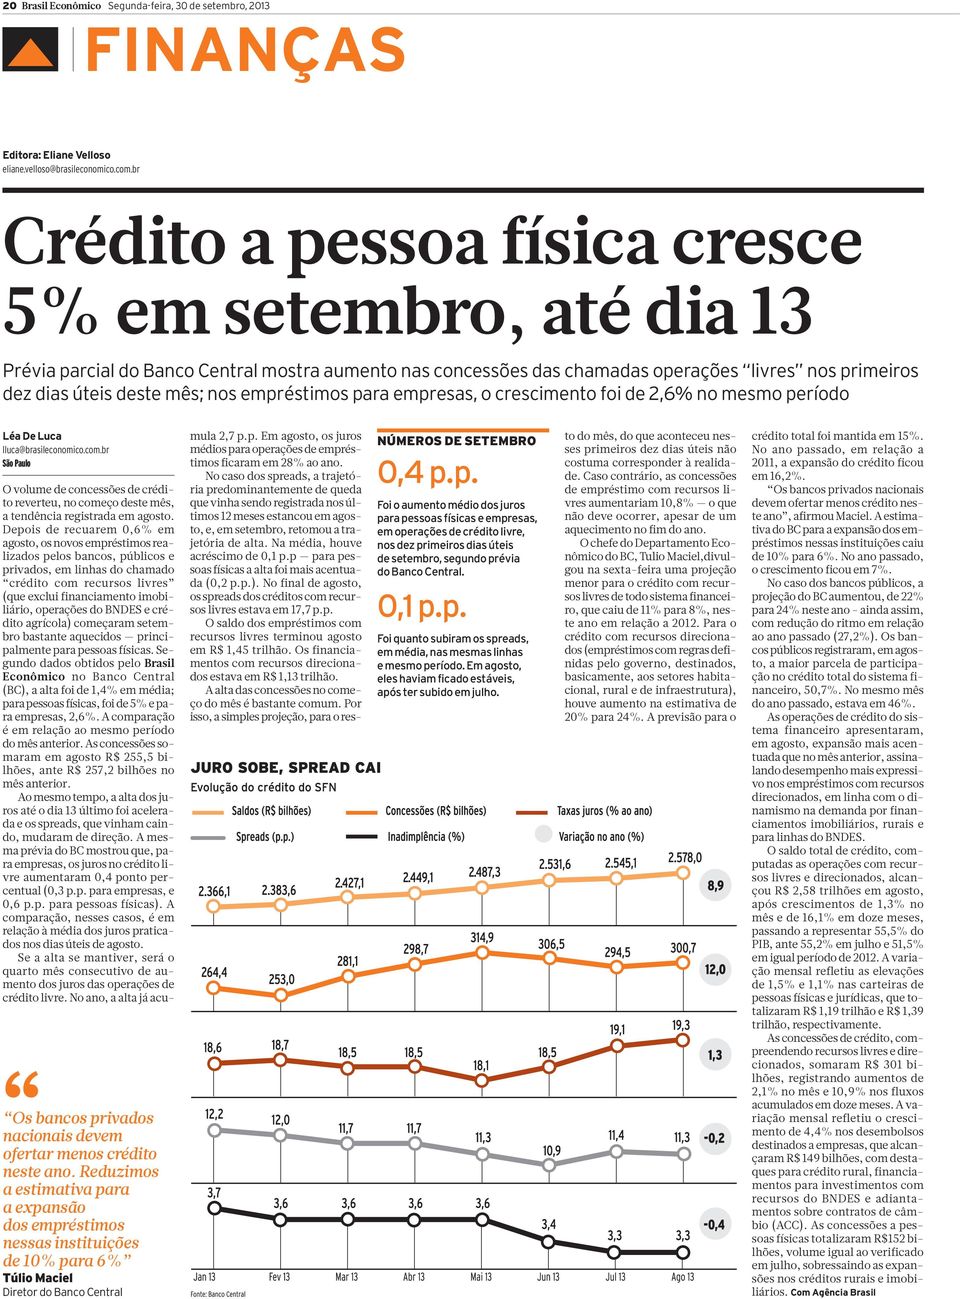 empréstimos para empresas, o crescimento foi de 2,6% no mesmo período Léa De Luca lluca@brasileconomico.com.br São Paulo Os bancos privados nacionais devem ofertar menos crédito neste ano.